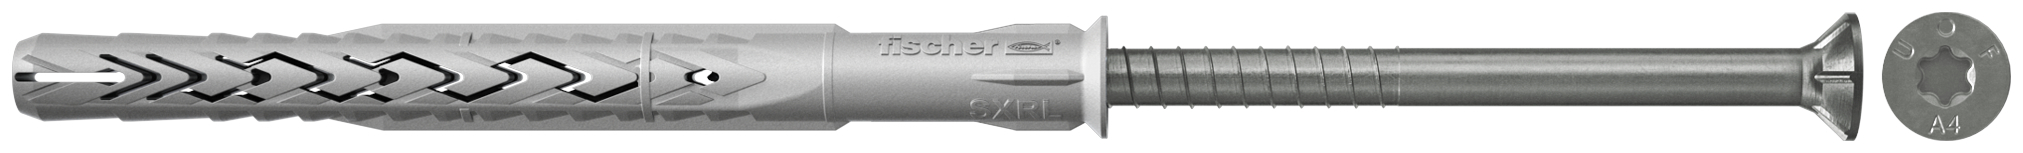 fischer Tasselli prolungati SXRL 8x80 T A4 (1 Pz.) Tassello prolungato in nylon con marcatura CE con vite premontata in acciaio inox A4, T.S.P. impronta torx fie3164